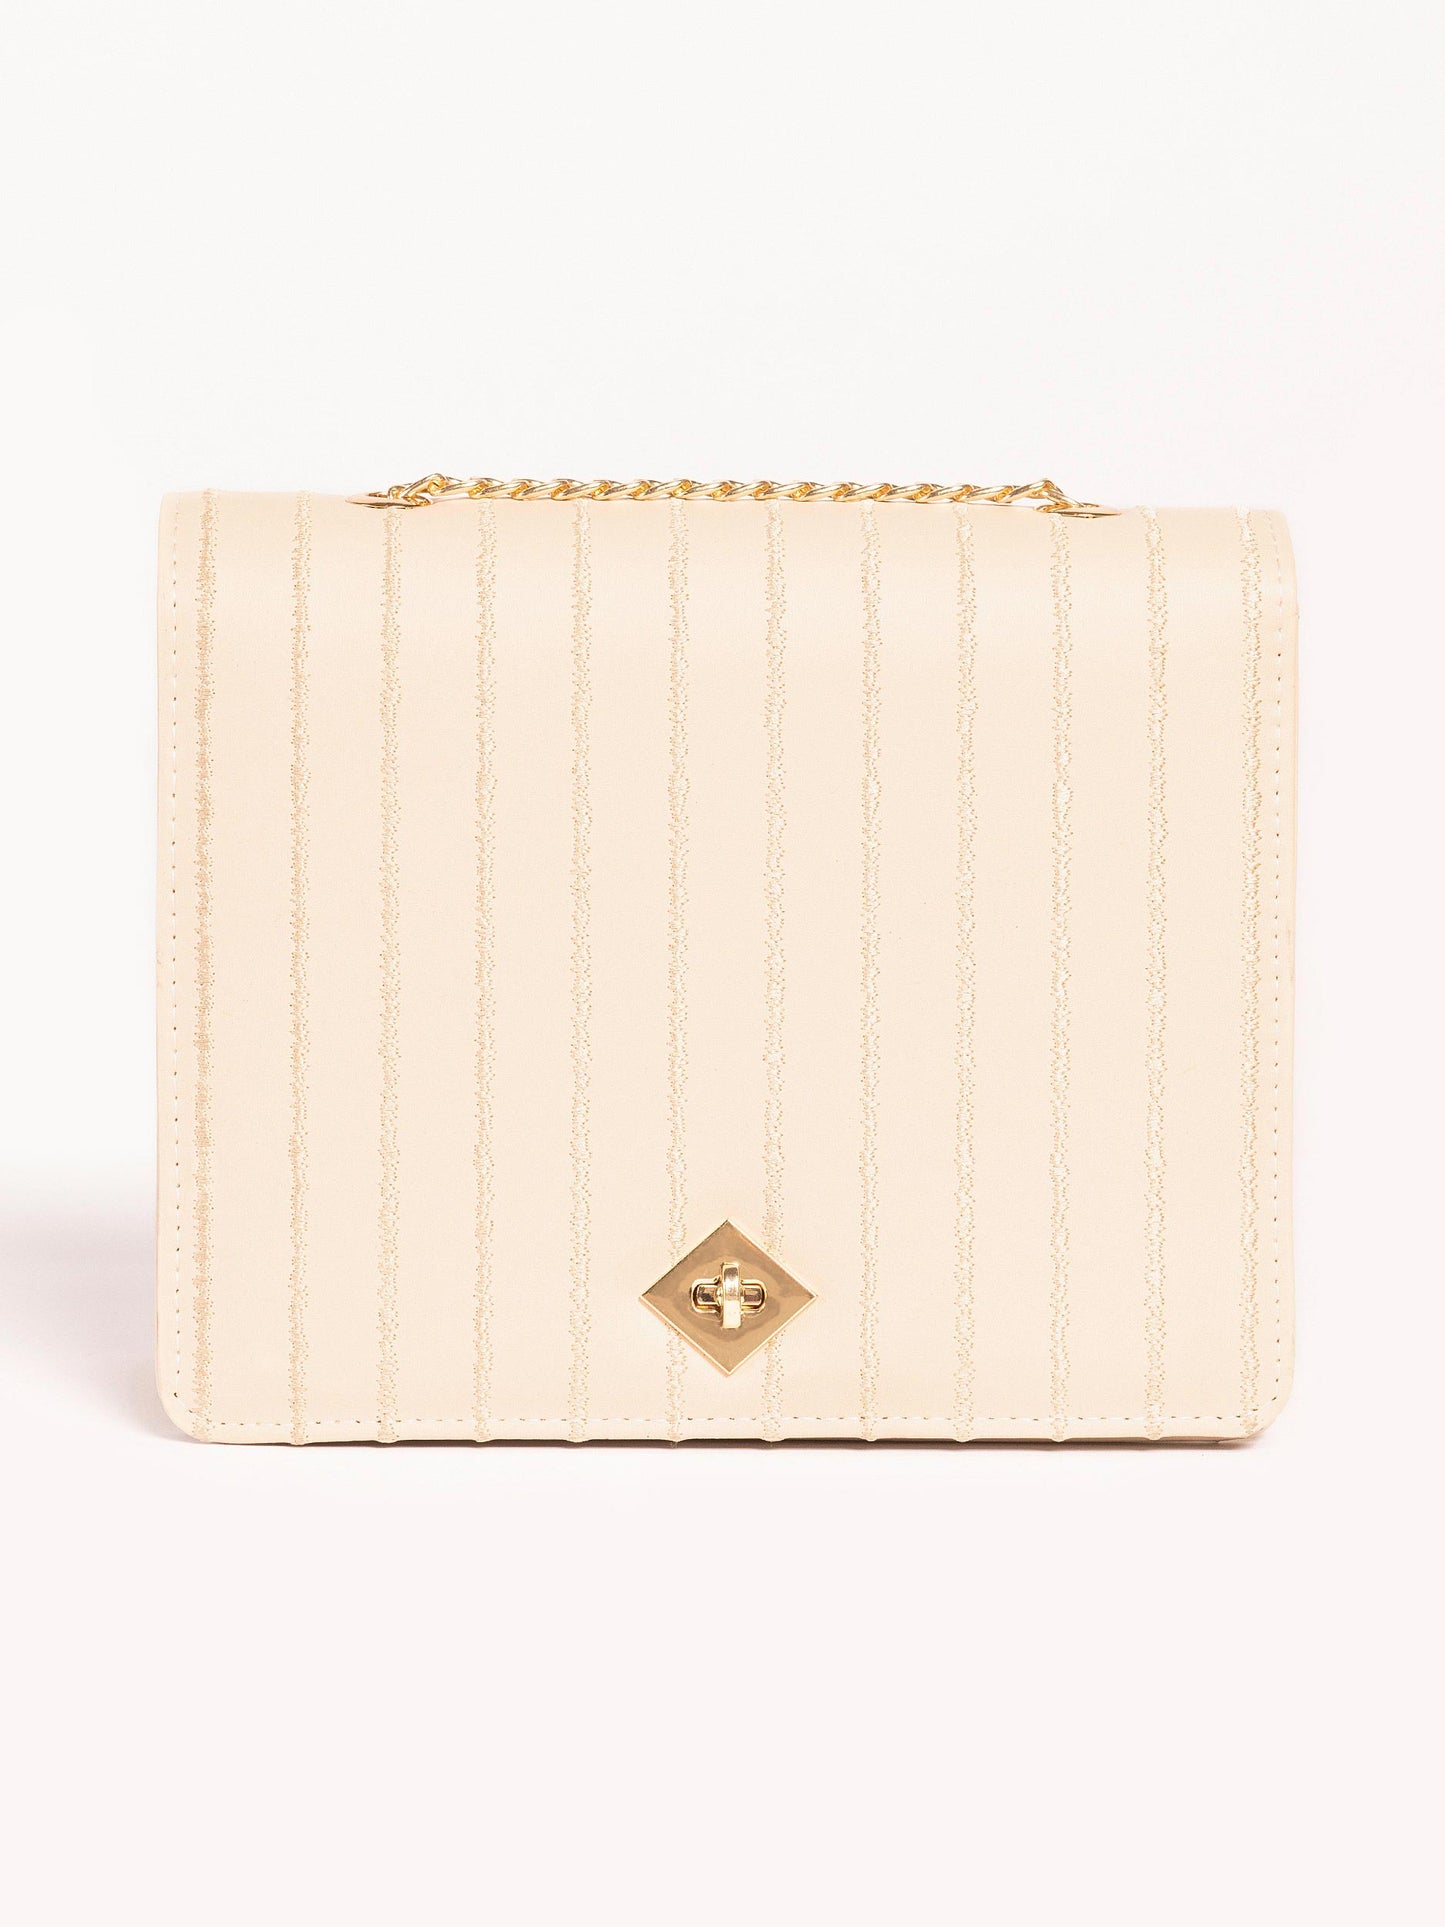 Embroidered Box Style Handbag